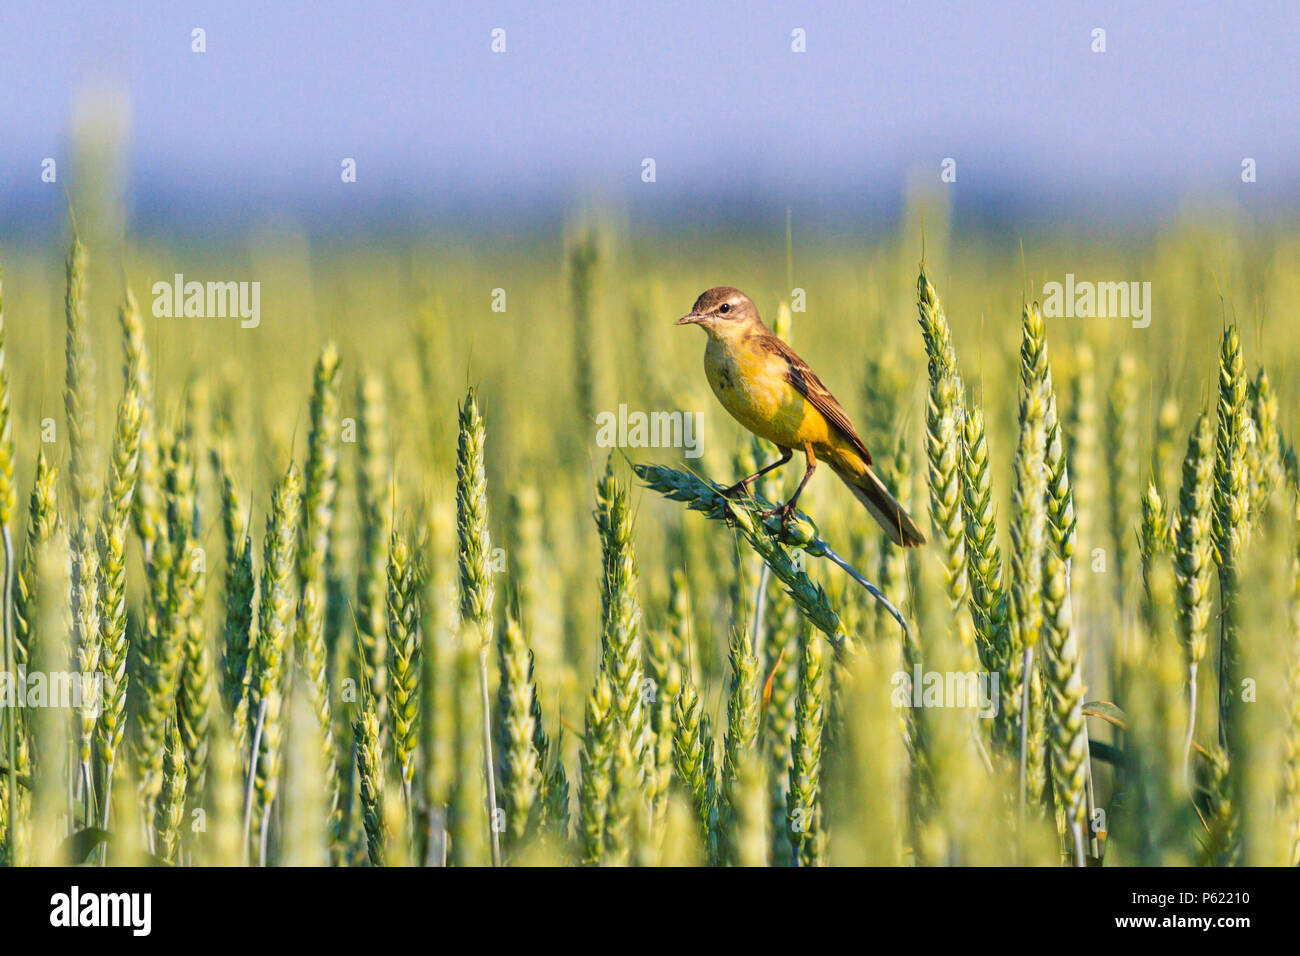 Пшеничная птица. Пшеничное поле с птицами. Пшеница для птиц. Птица пшеничного цвета. Птицы пшеничного поля названия.